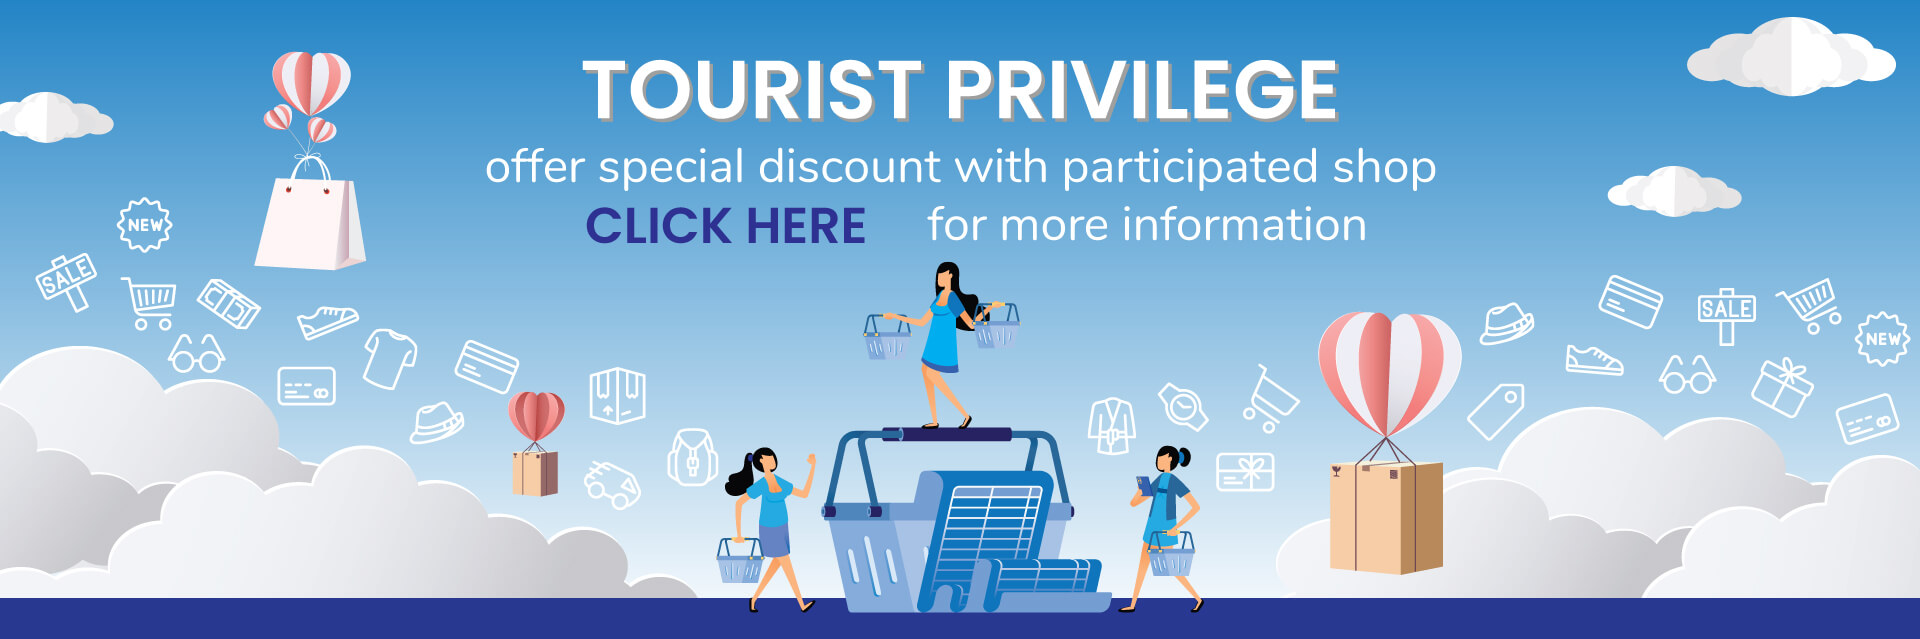 tourist_privilege